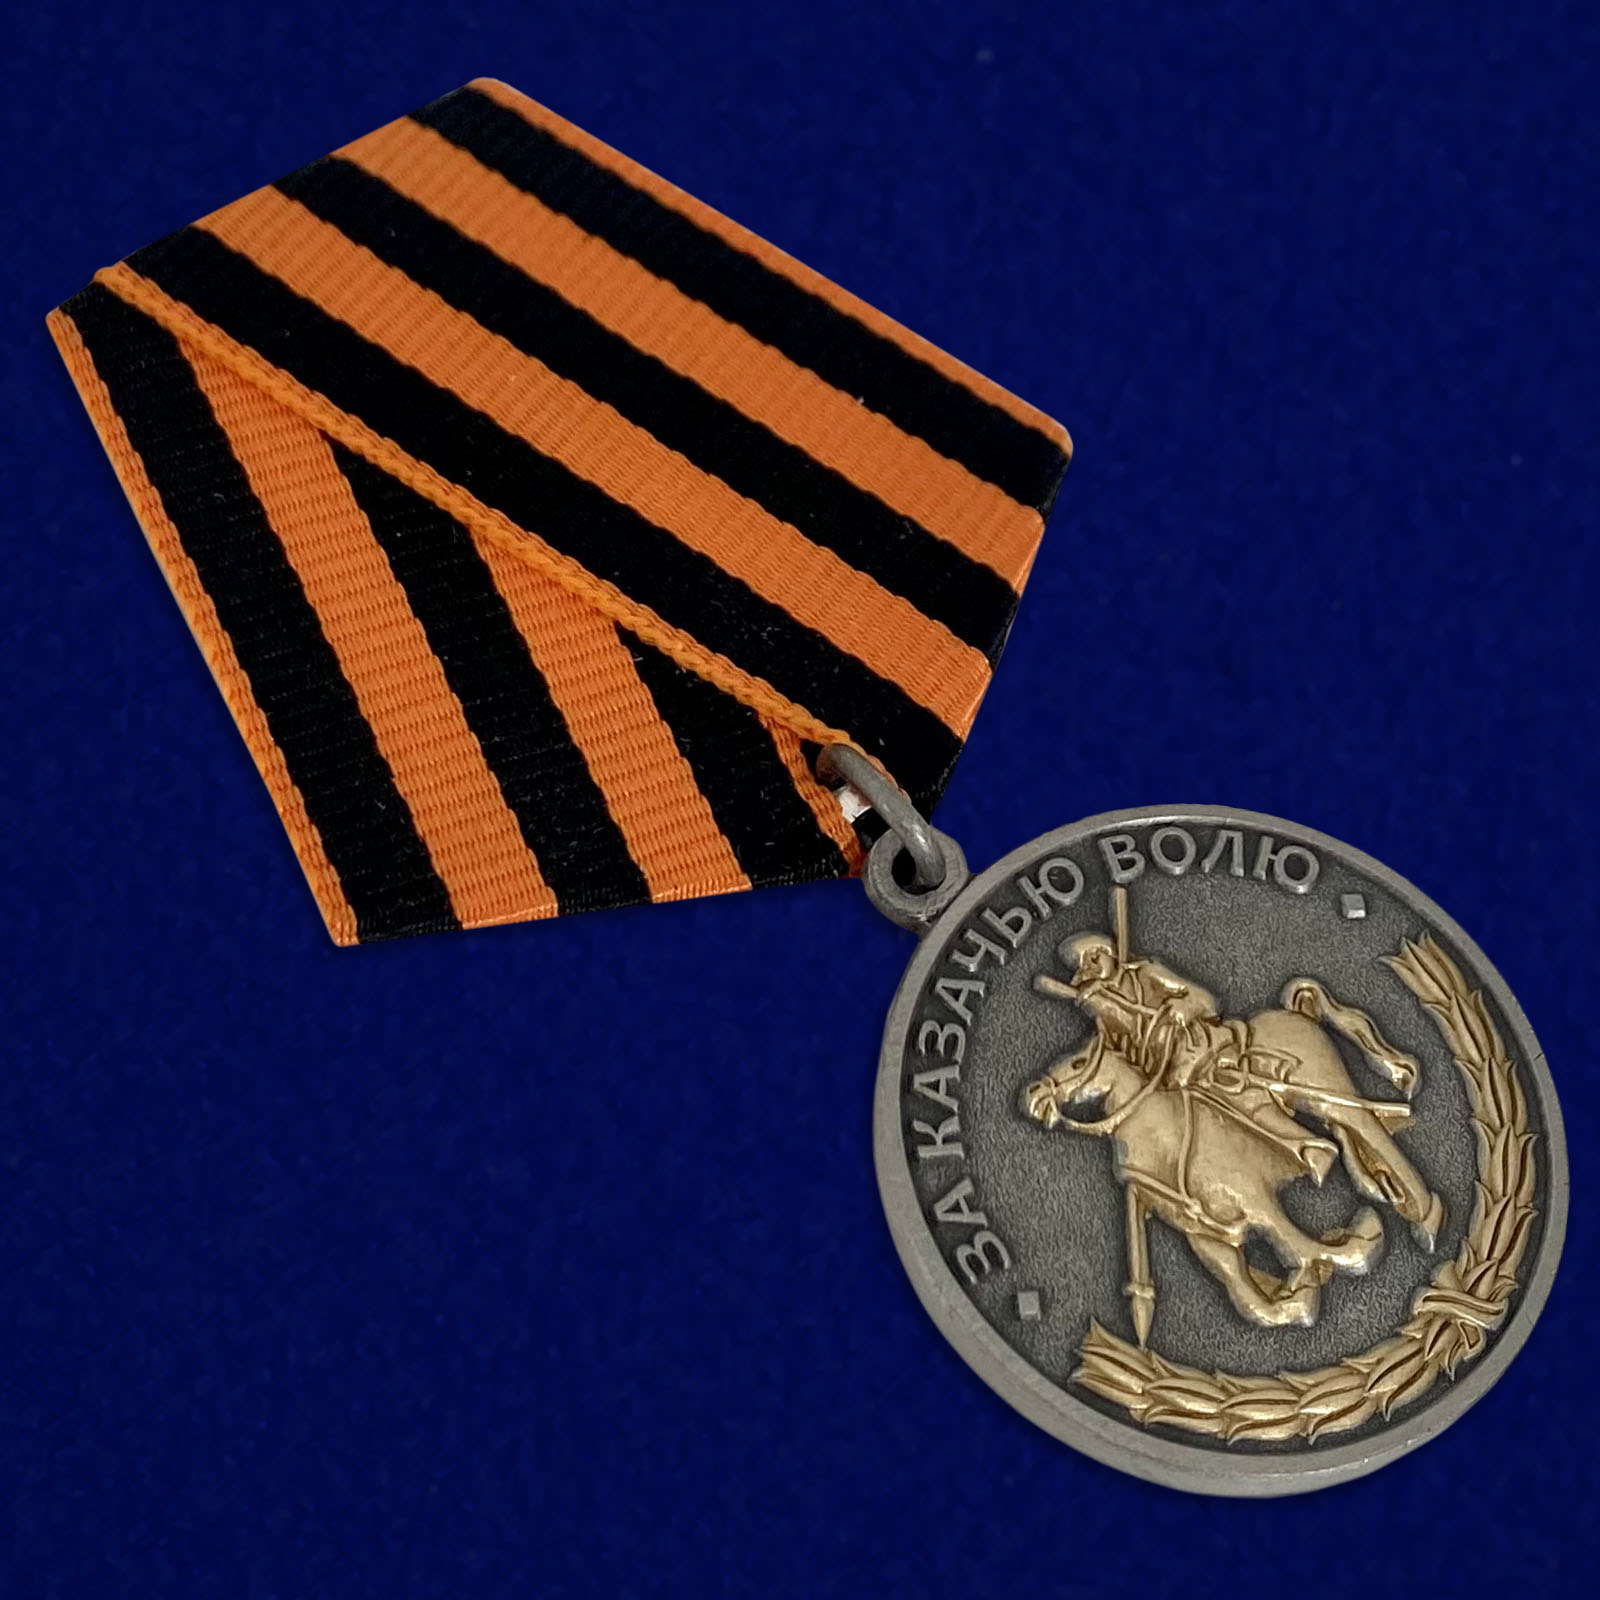 Купить медаль "За казачью волю" (георгиевская лента)